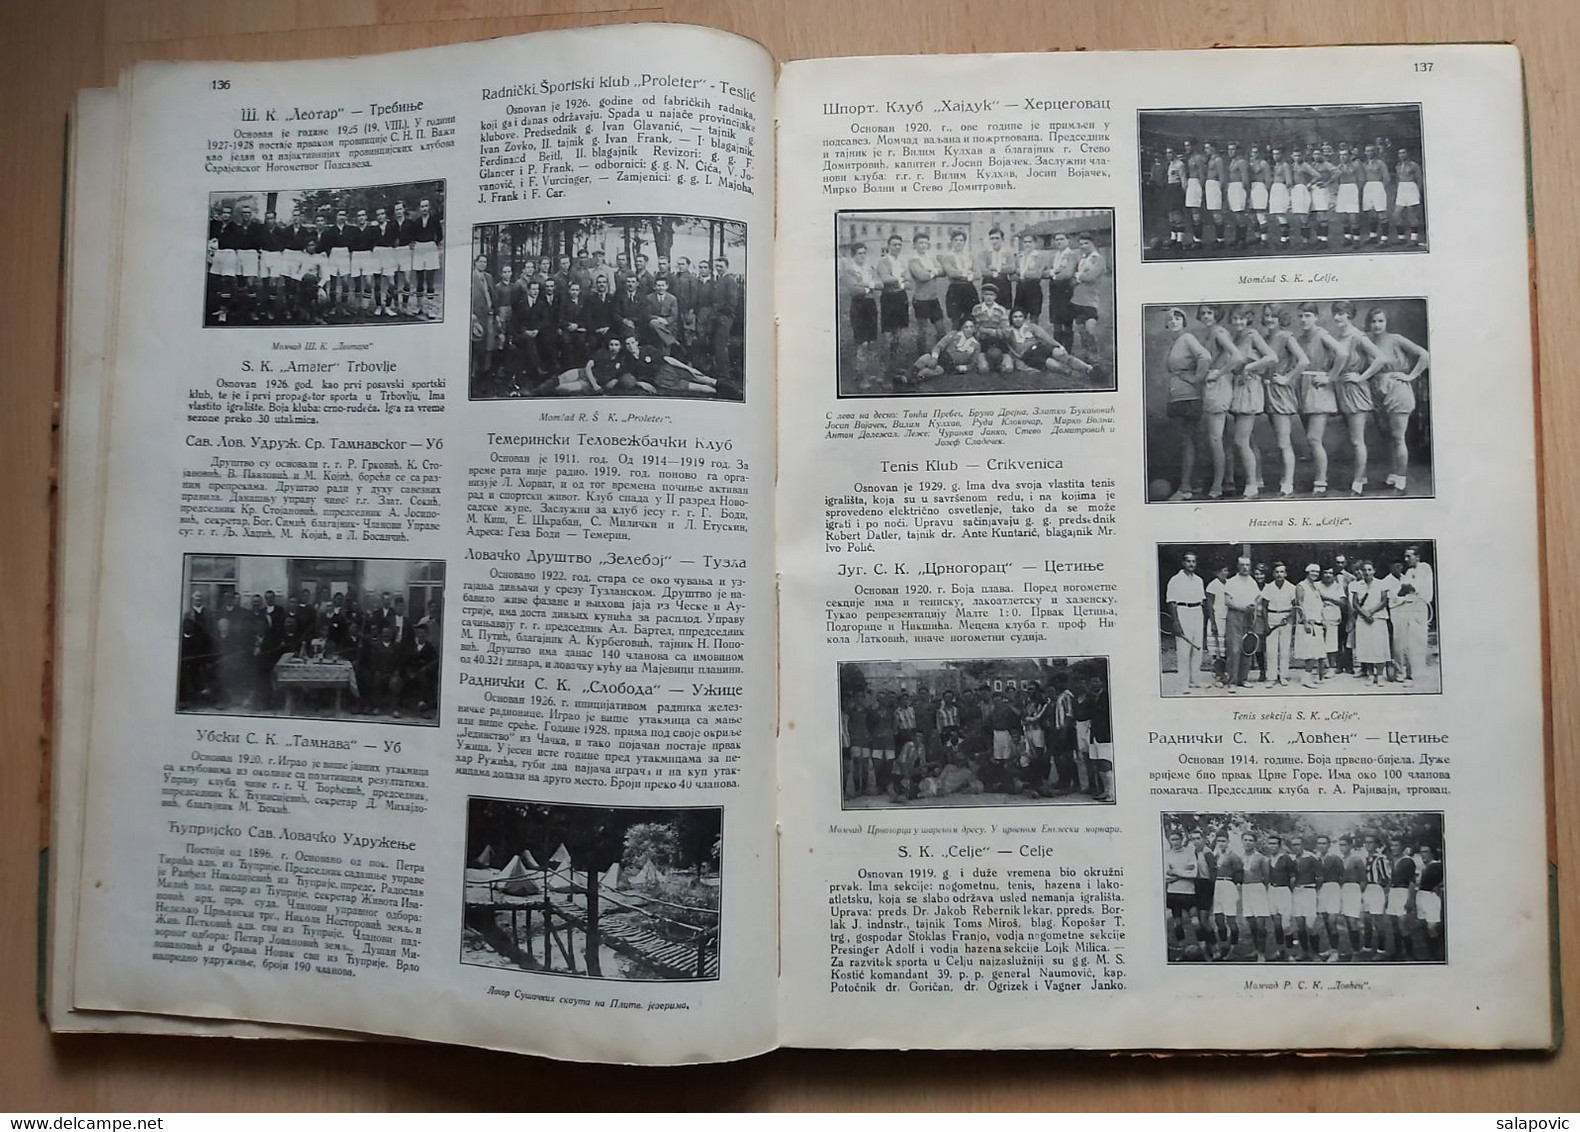 Football PRVI JUGOSLOVENSKI SPORTSKI ALMANAH, [The First Yugoslav Sports Almanac] (Belgrade 1930) RRARE